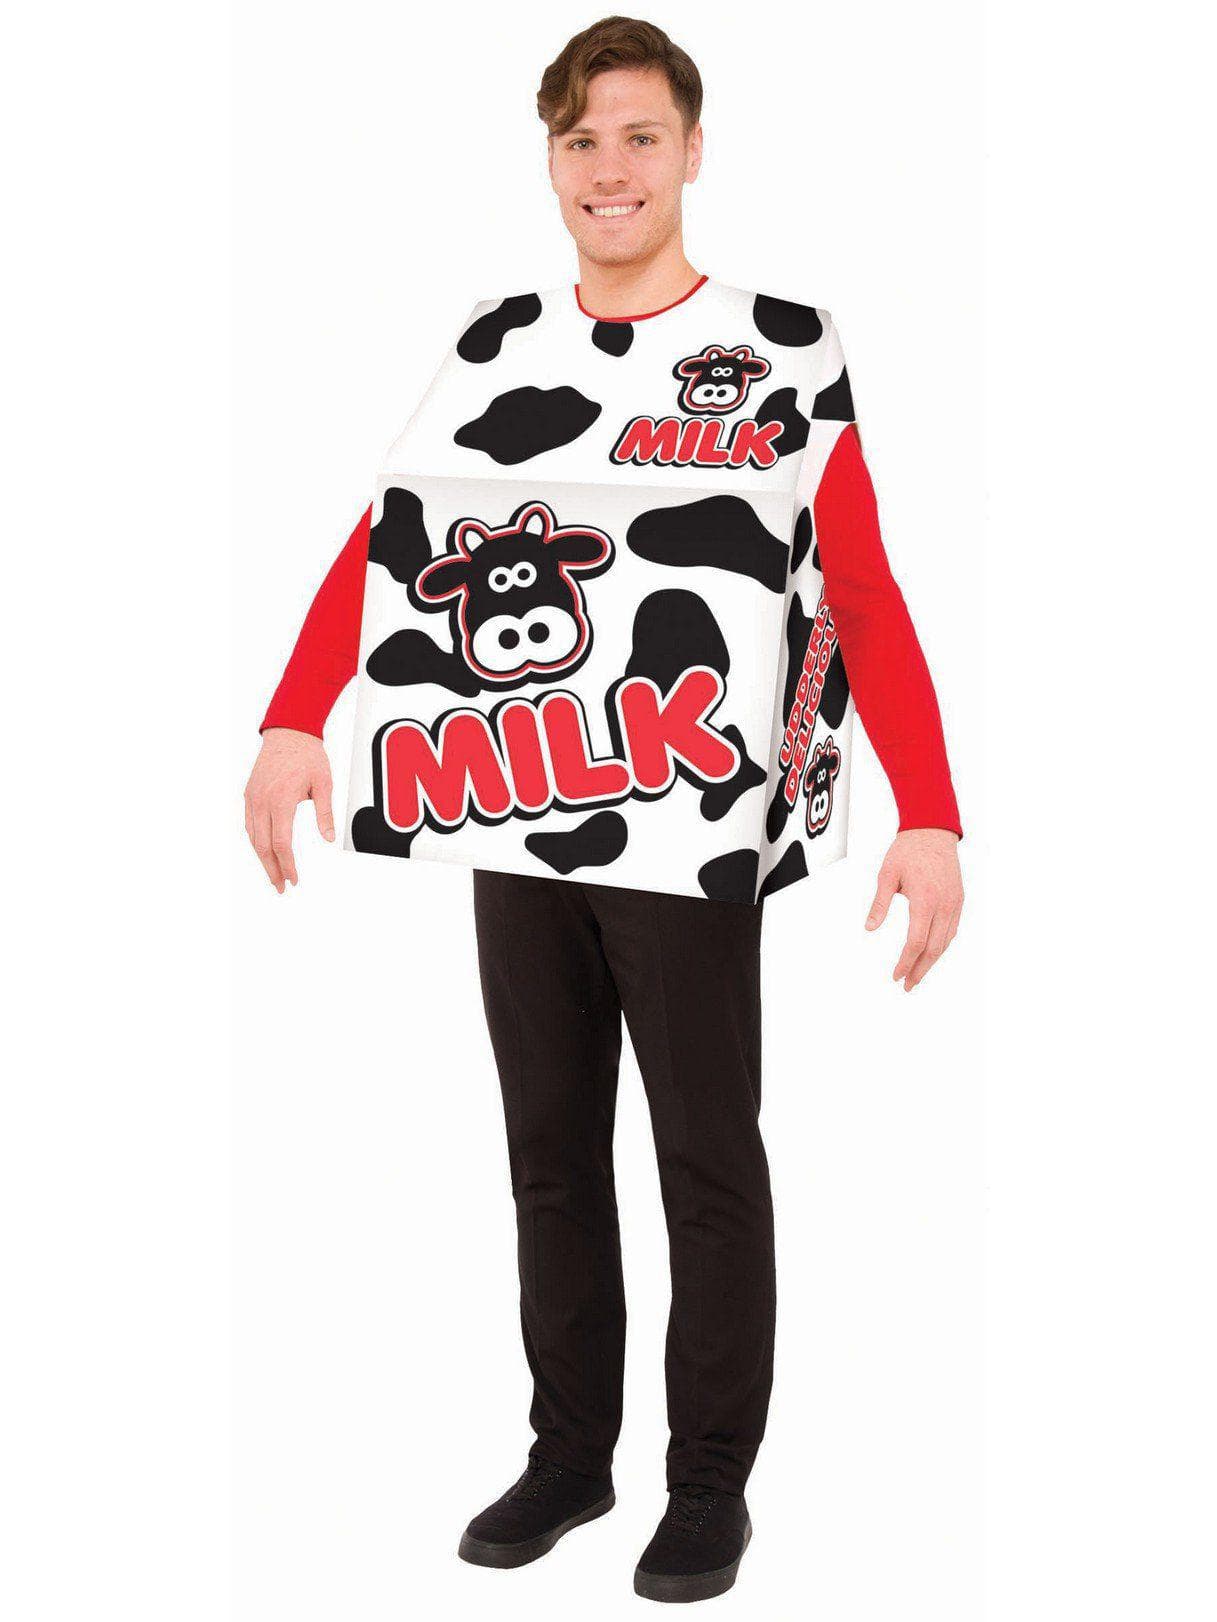 Adult Milk/S Costume - costumes.com